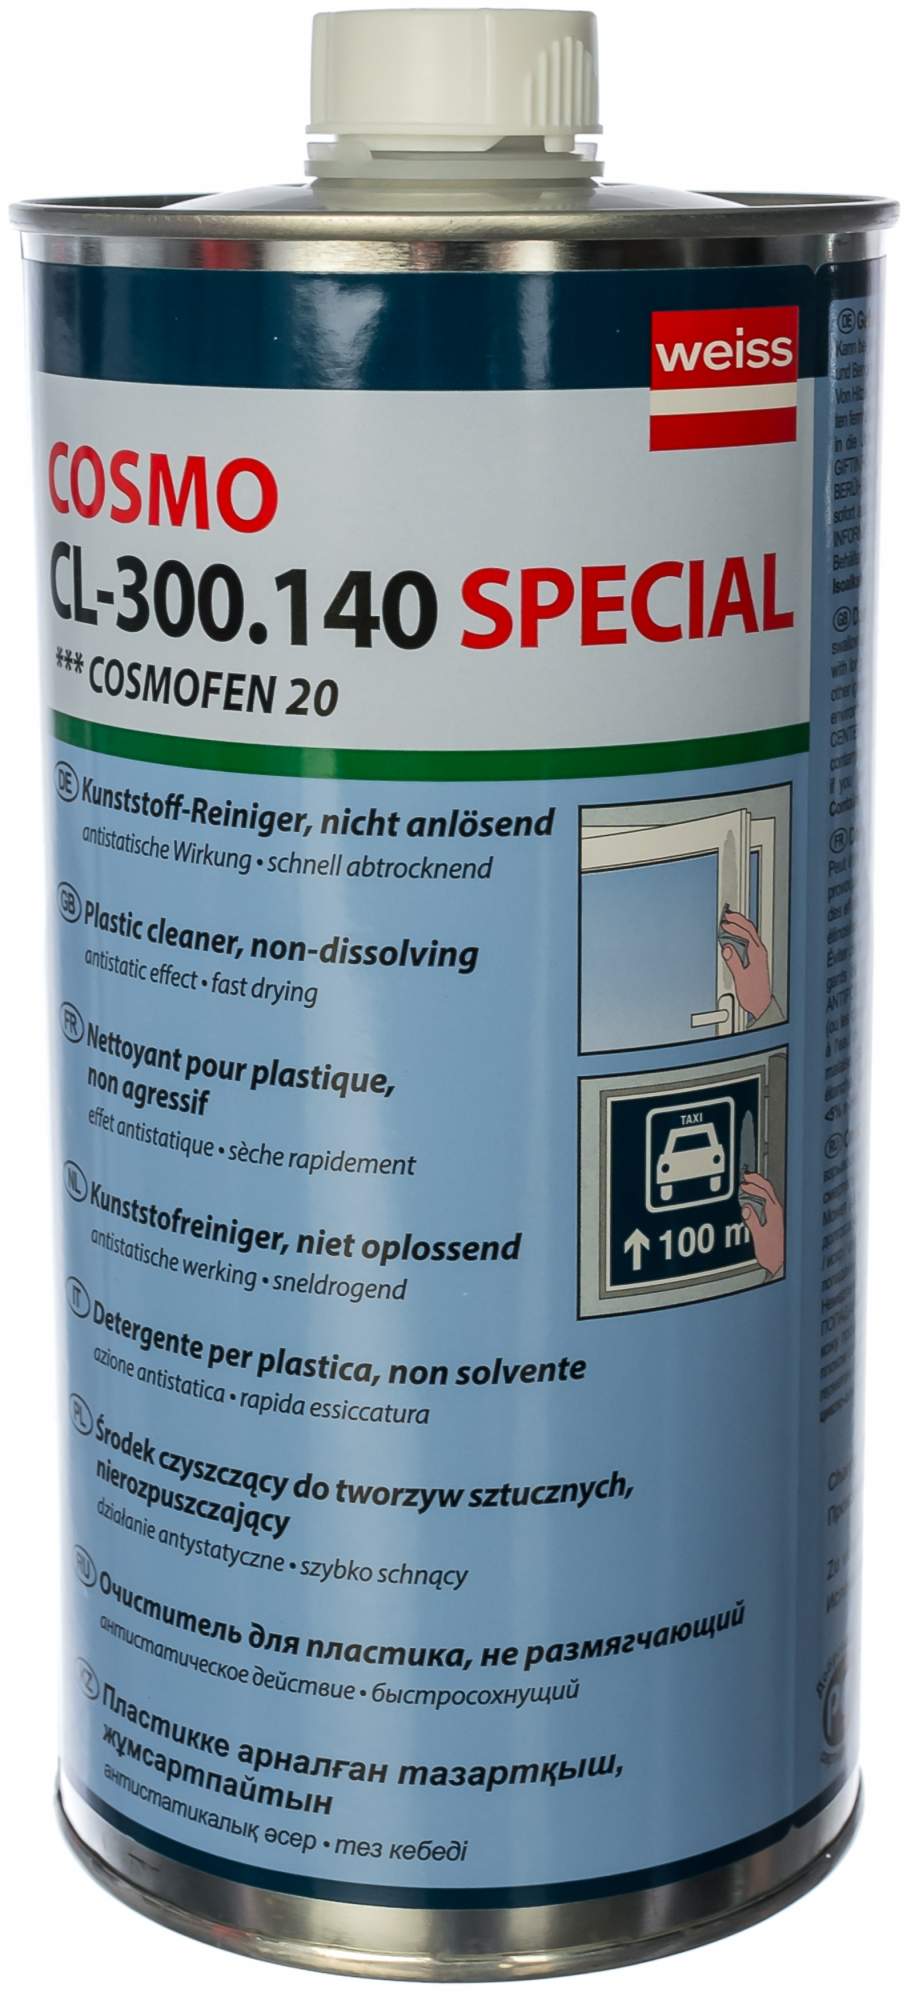 Очиститель для ПВХ нерастворяющий COSMOFEN CL-300.140 20 1 л